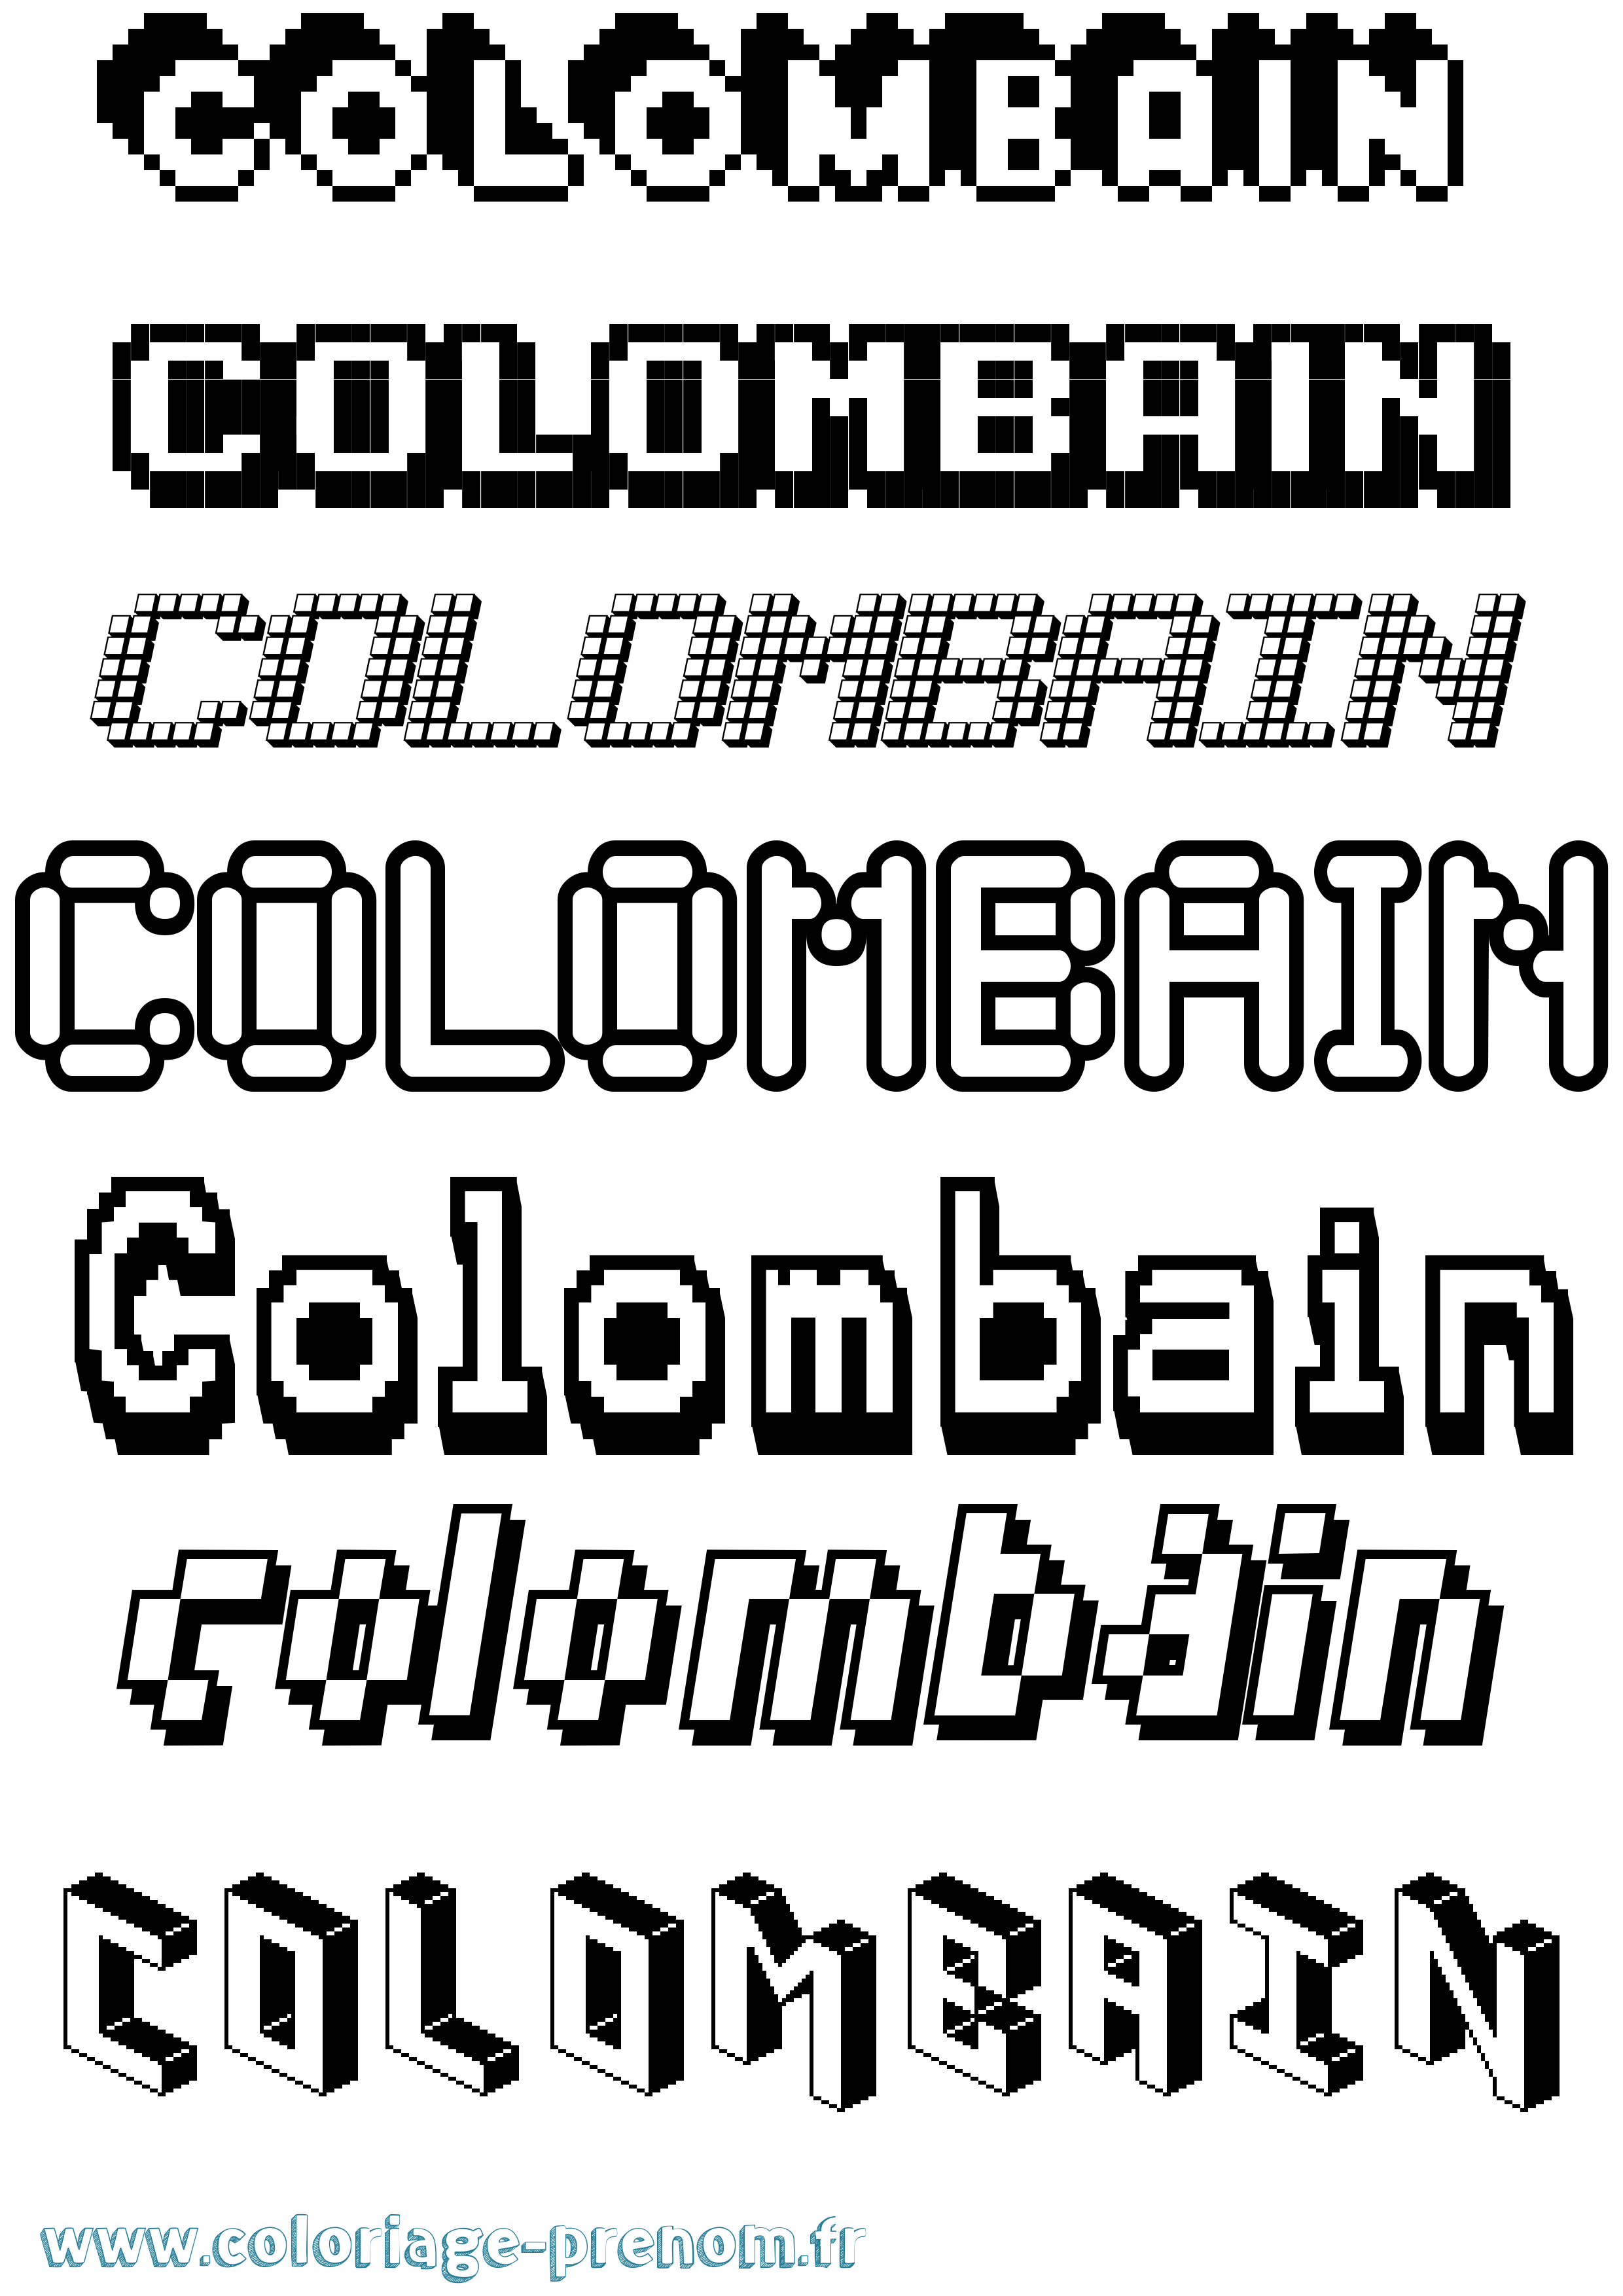 Coloriage prénom Colombain Pixel